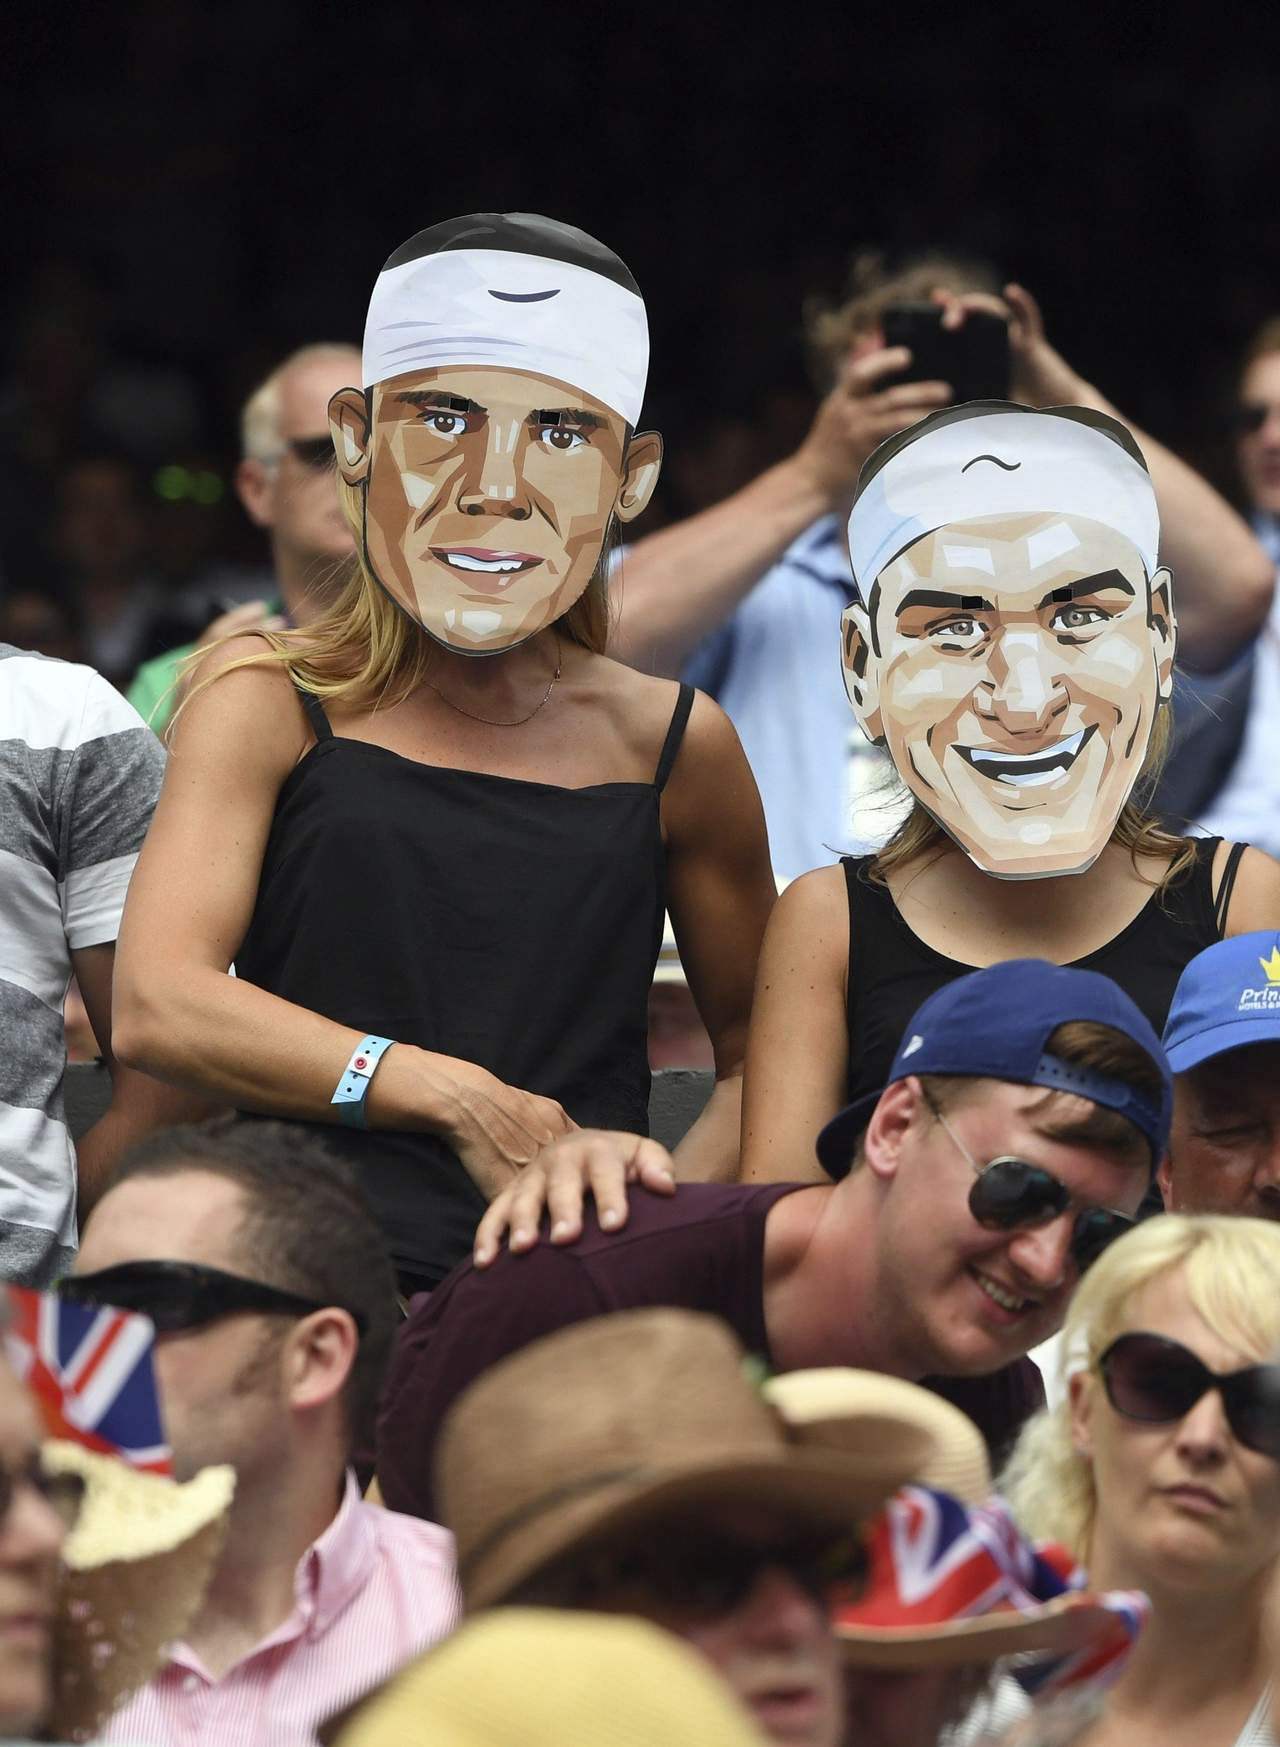 La rivalidad del suizo Roger Federer y el español Rafael Nadal ha sido trasladada hasta las tribunas de los torneos donde ambos tenistas se presentan.